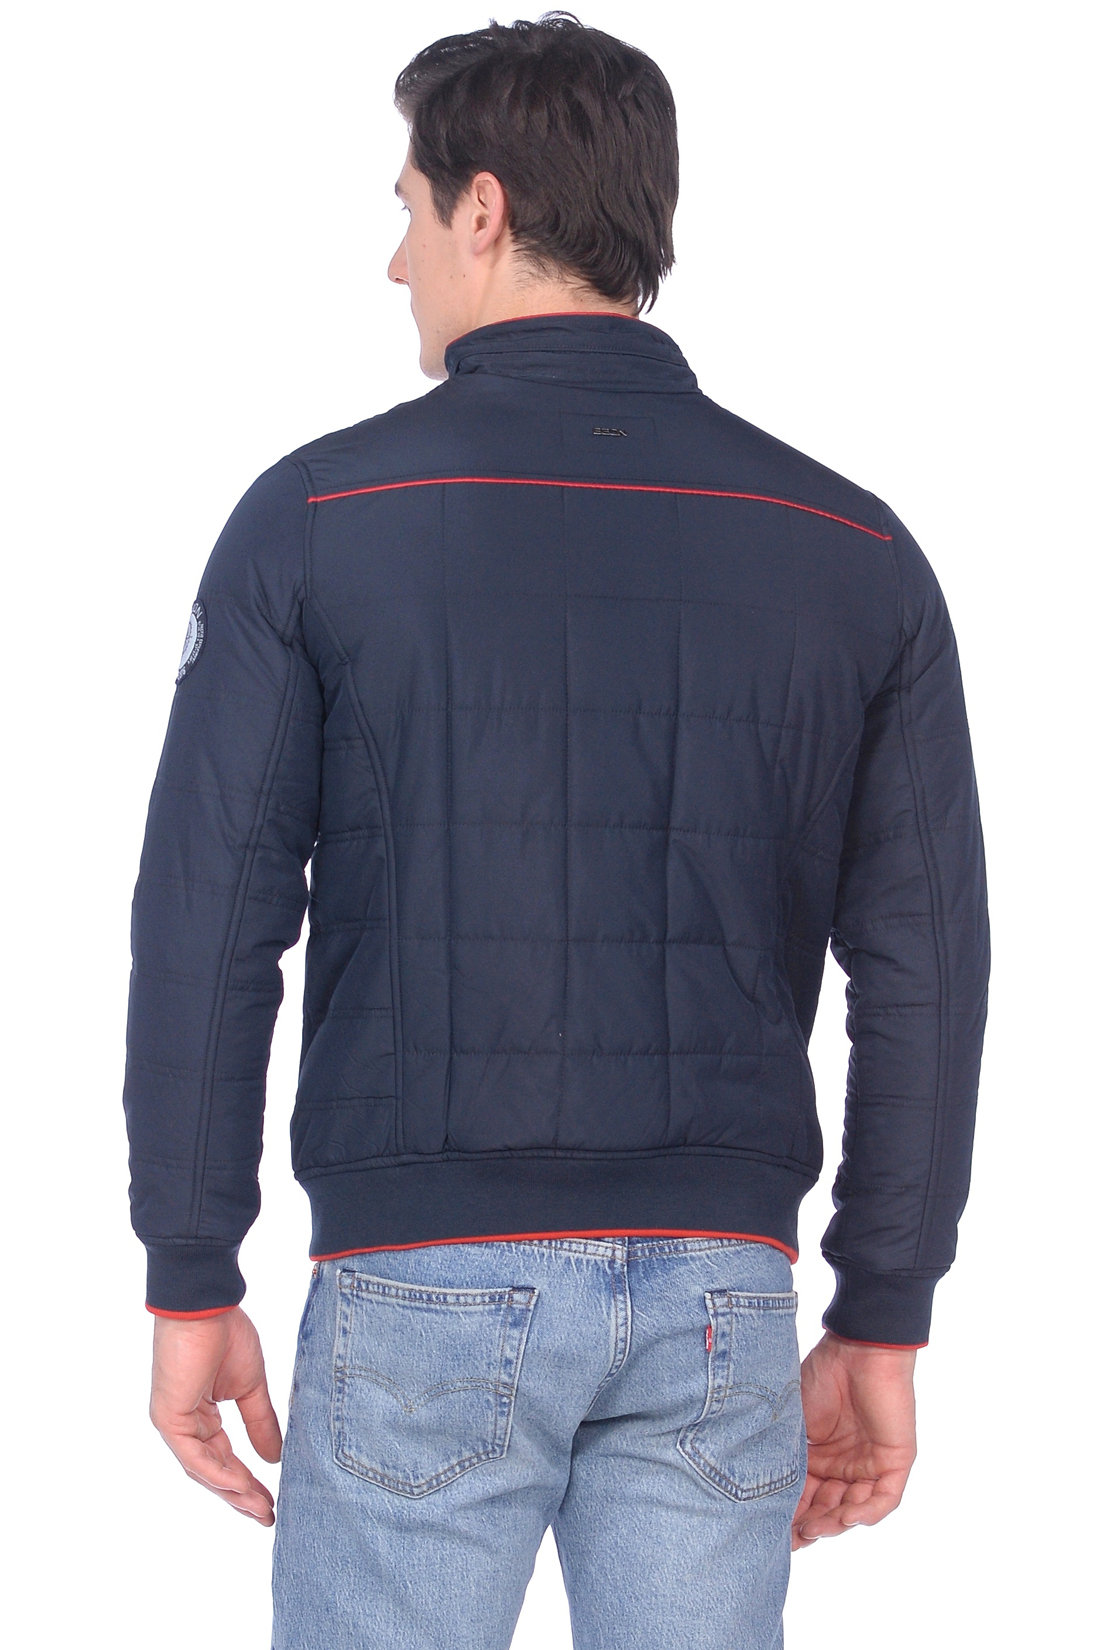 Куртка с красной окантовкой (арт. baon B539003), размер S, цвет синий Куртка с красной окантовкой (арт. baon B539003) - фото 4